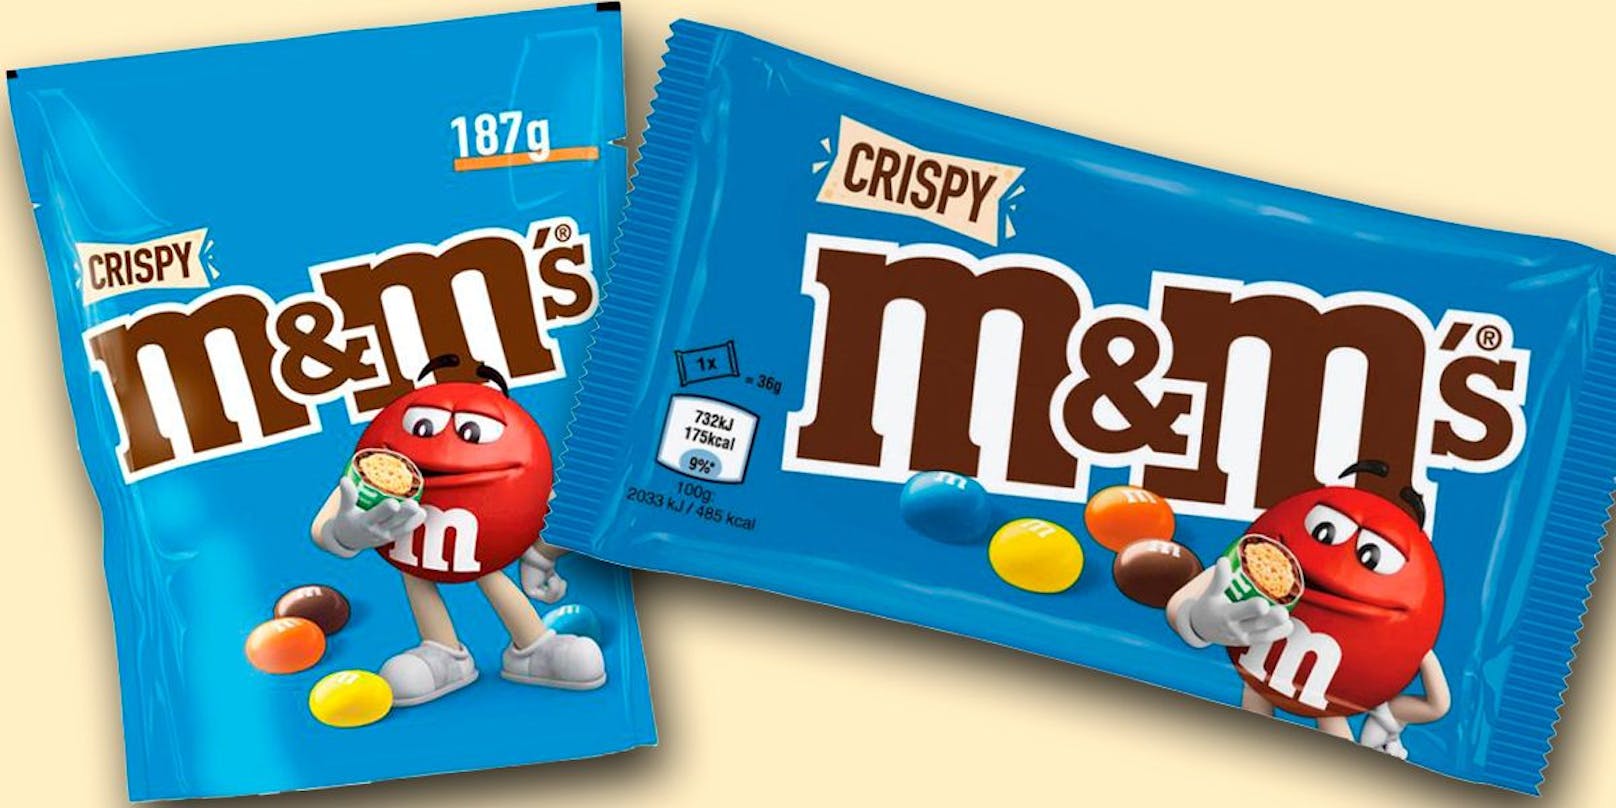 Die M&M's Crispy sind aktuell von einer Lebensmittelwarnung betroffen.